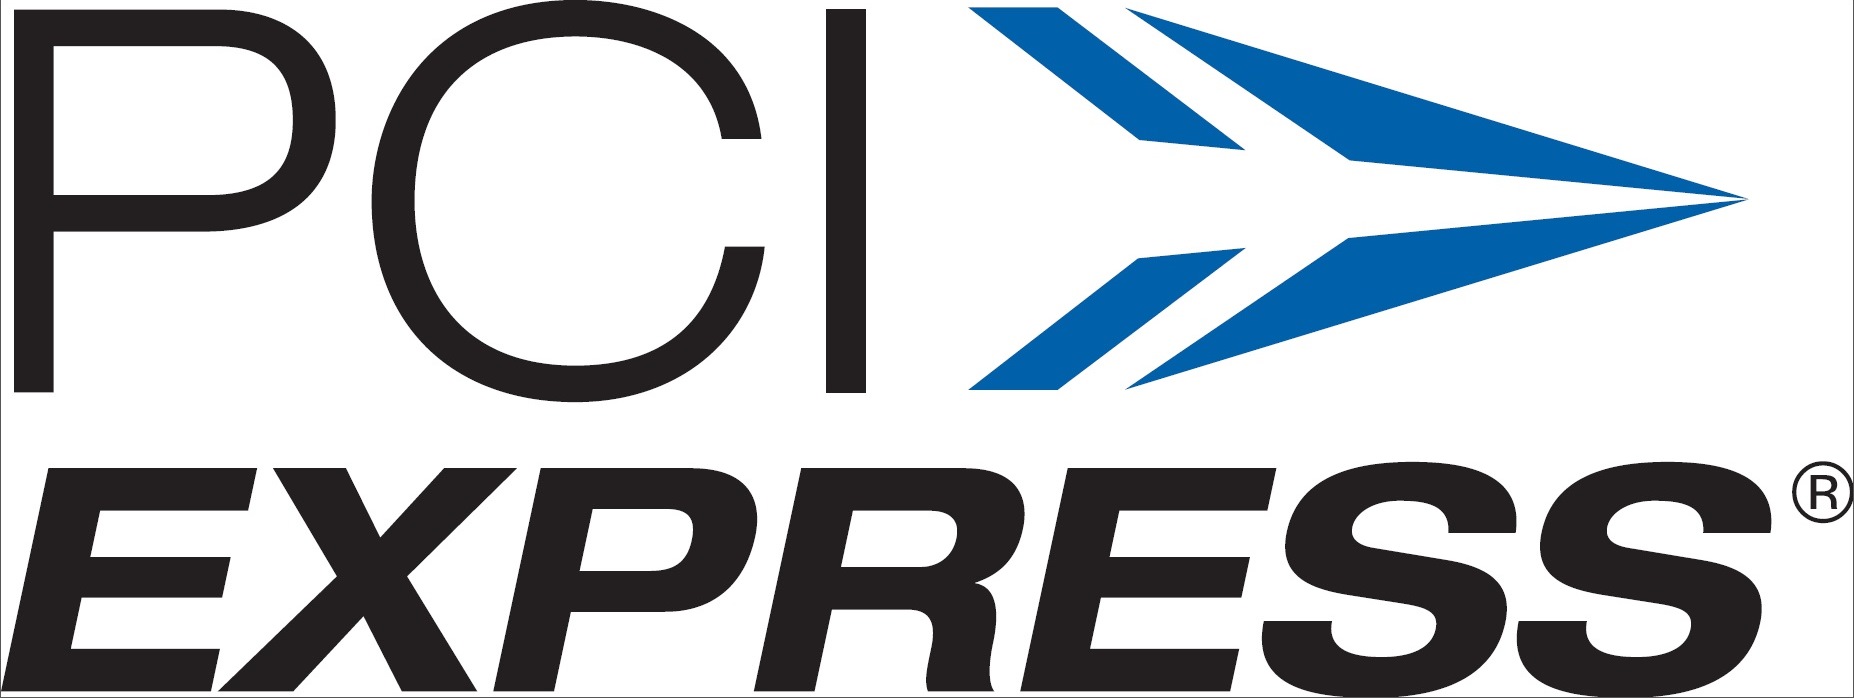 PCI Express cameras XIMEA vision logo